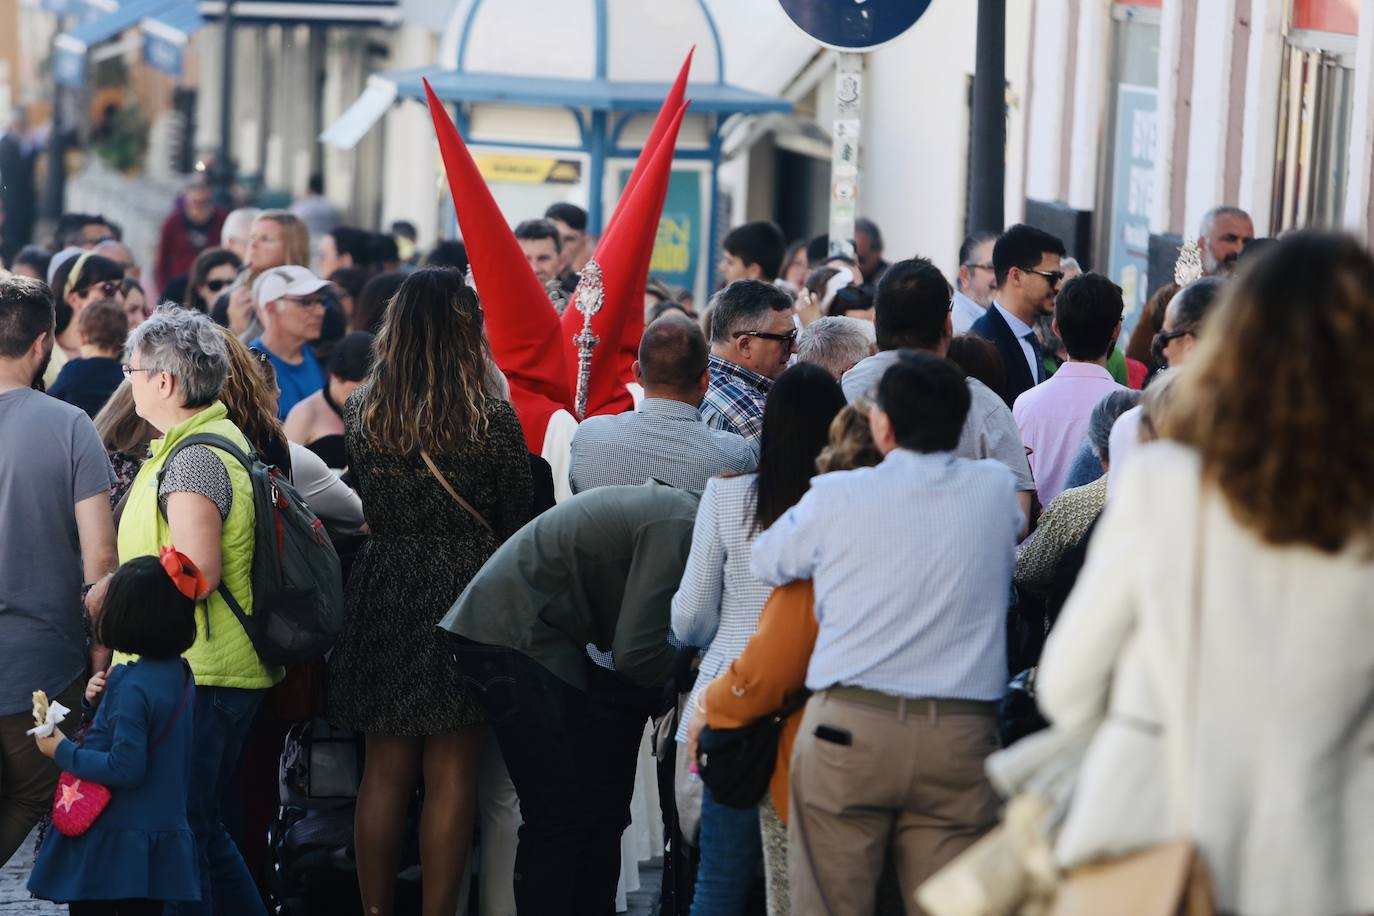 Fotos: Las Penas y su andar por las calles de Cádiz en este Domingo de Ramos